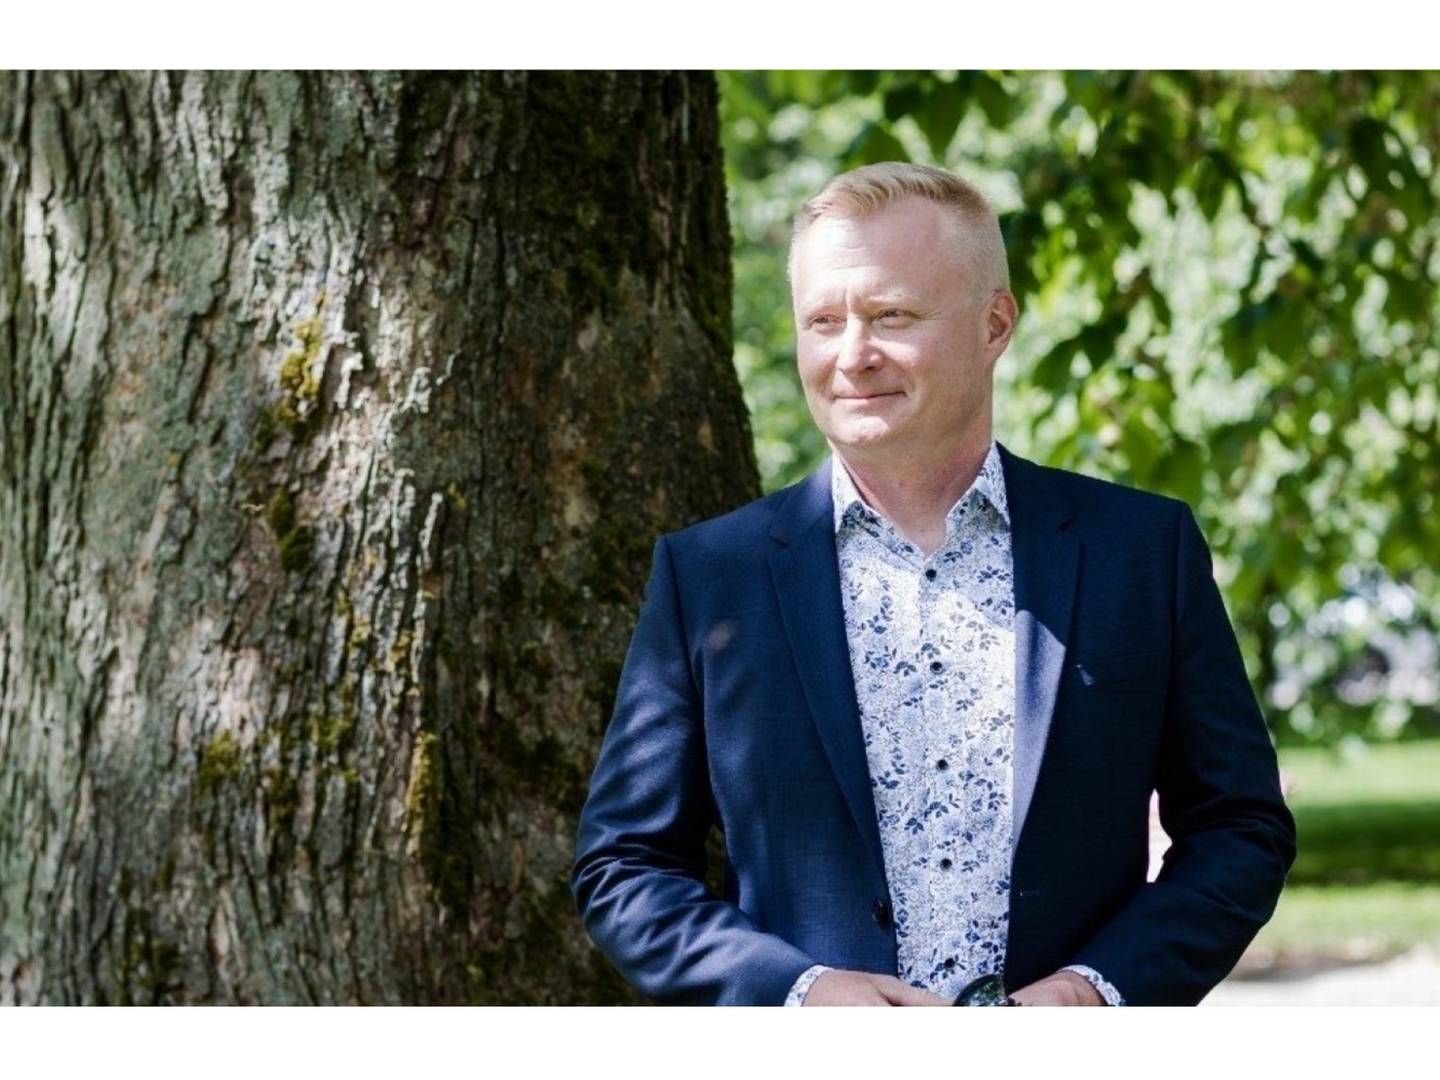 Tommi Rytkönen becomes the Head of Sales for Ålandsbanken Finland division in August 2022. | Photo: Ålandsbanken PR.